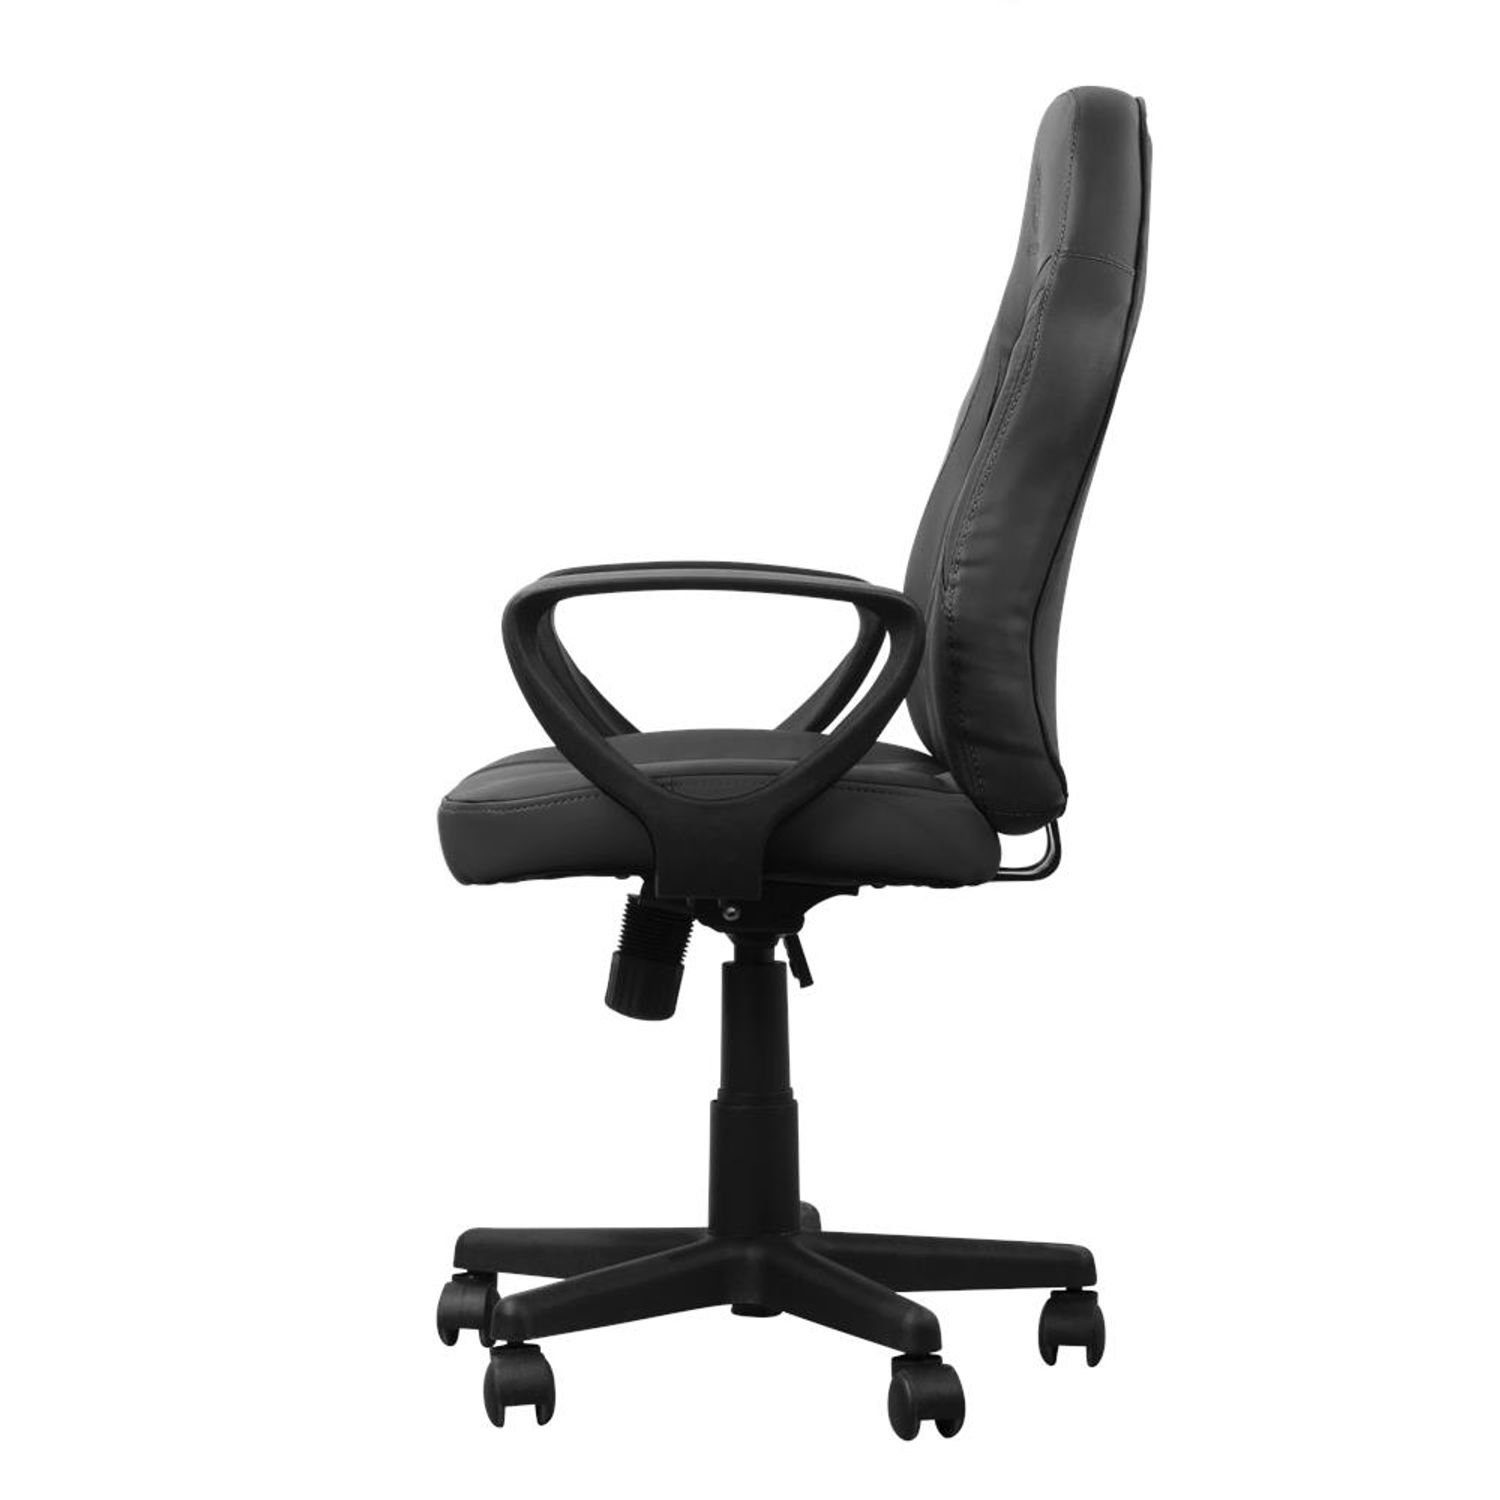 Stuhl klein bequem Herstellergarantie inkl. extra Gaming-Stuhl Set), schwarz nach langem DC110 (kein 5 Sitzen DELTACO Jahre selbst Gaming